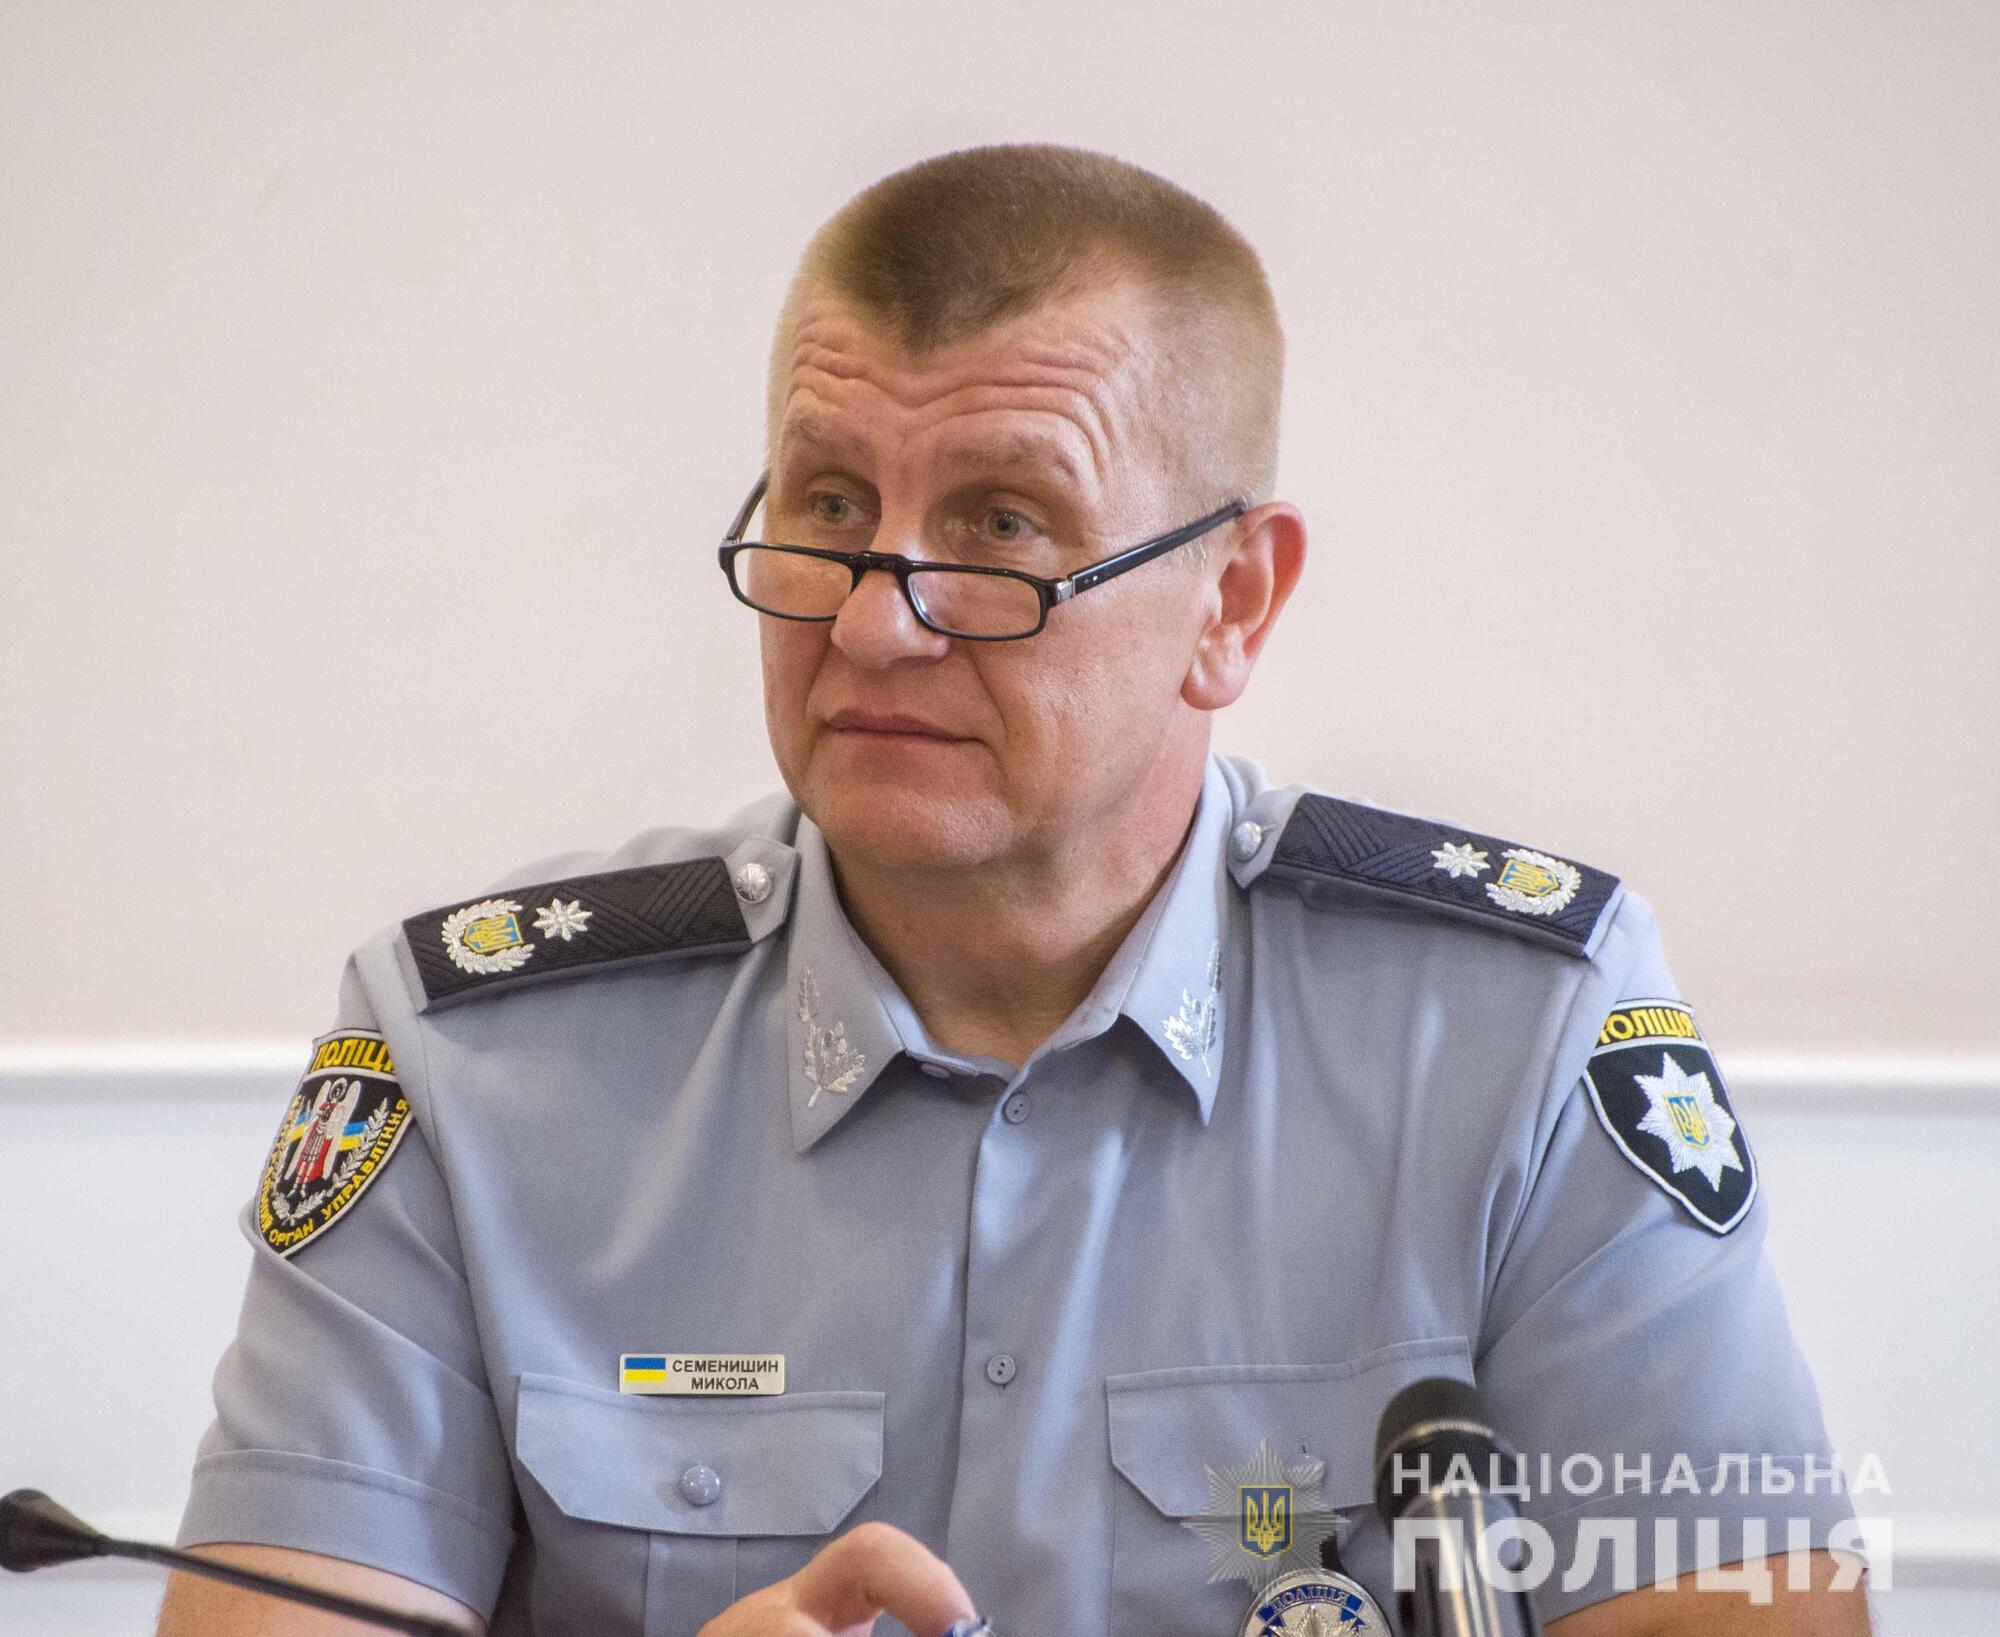 Микола Семенишин: Протидіяти злочинності без досвіду та мудрих настанов набагато важче